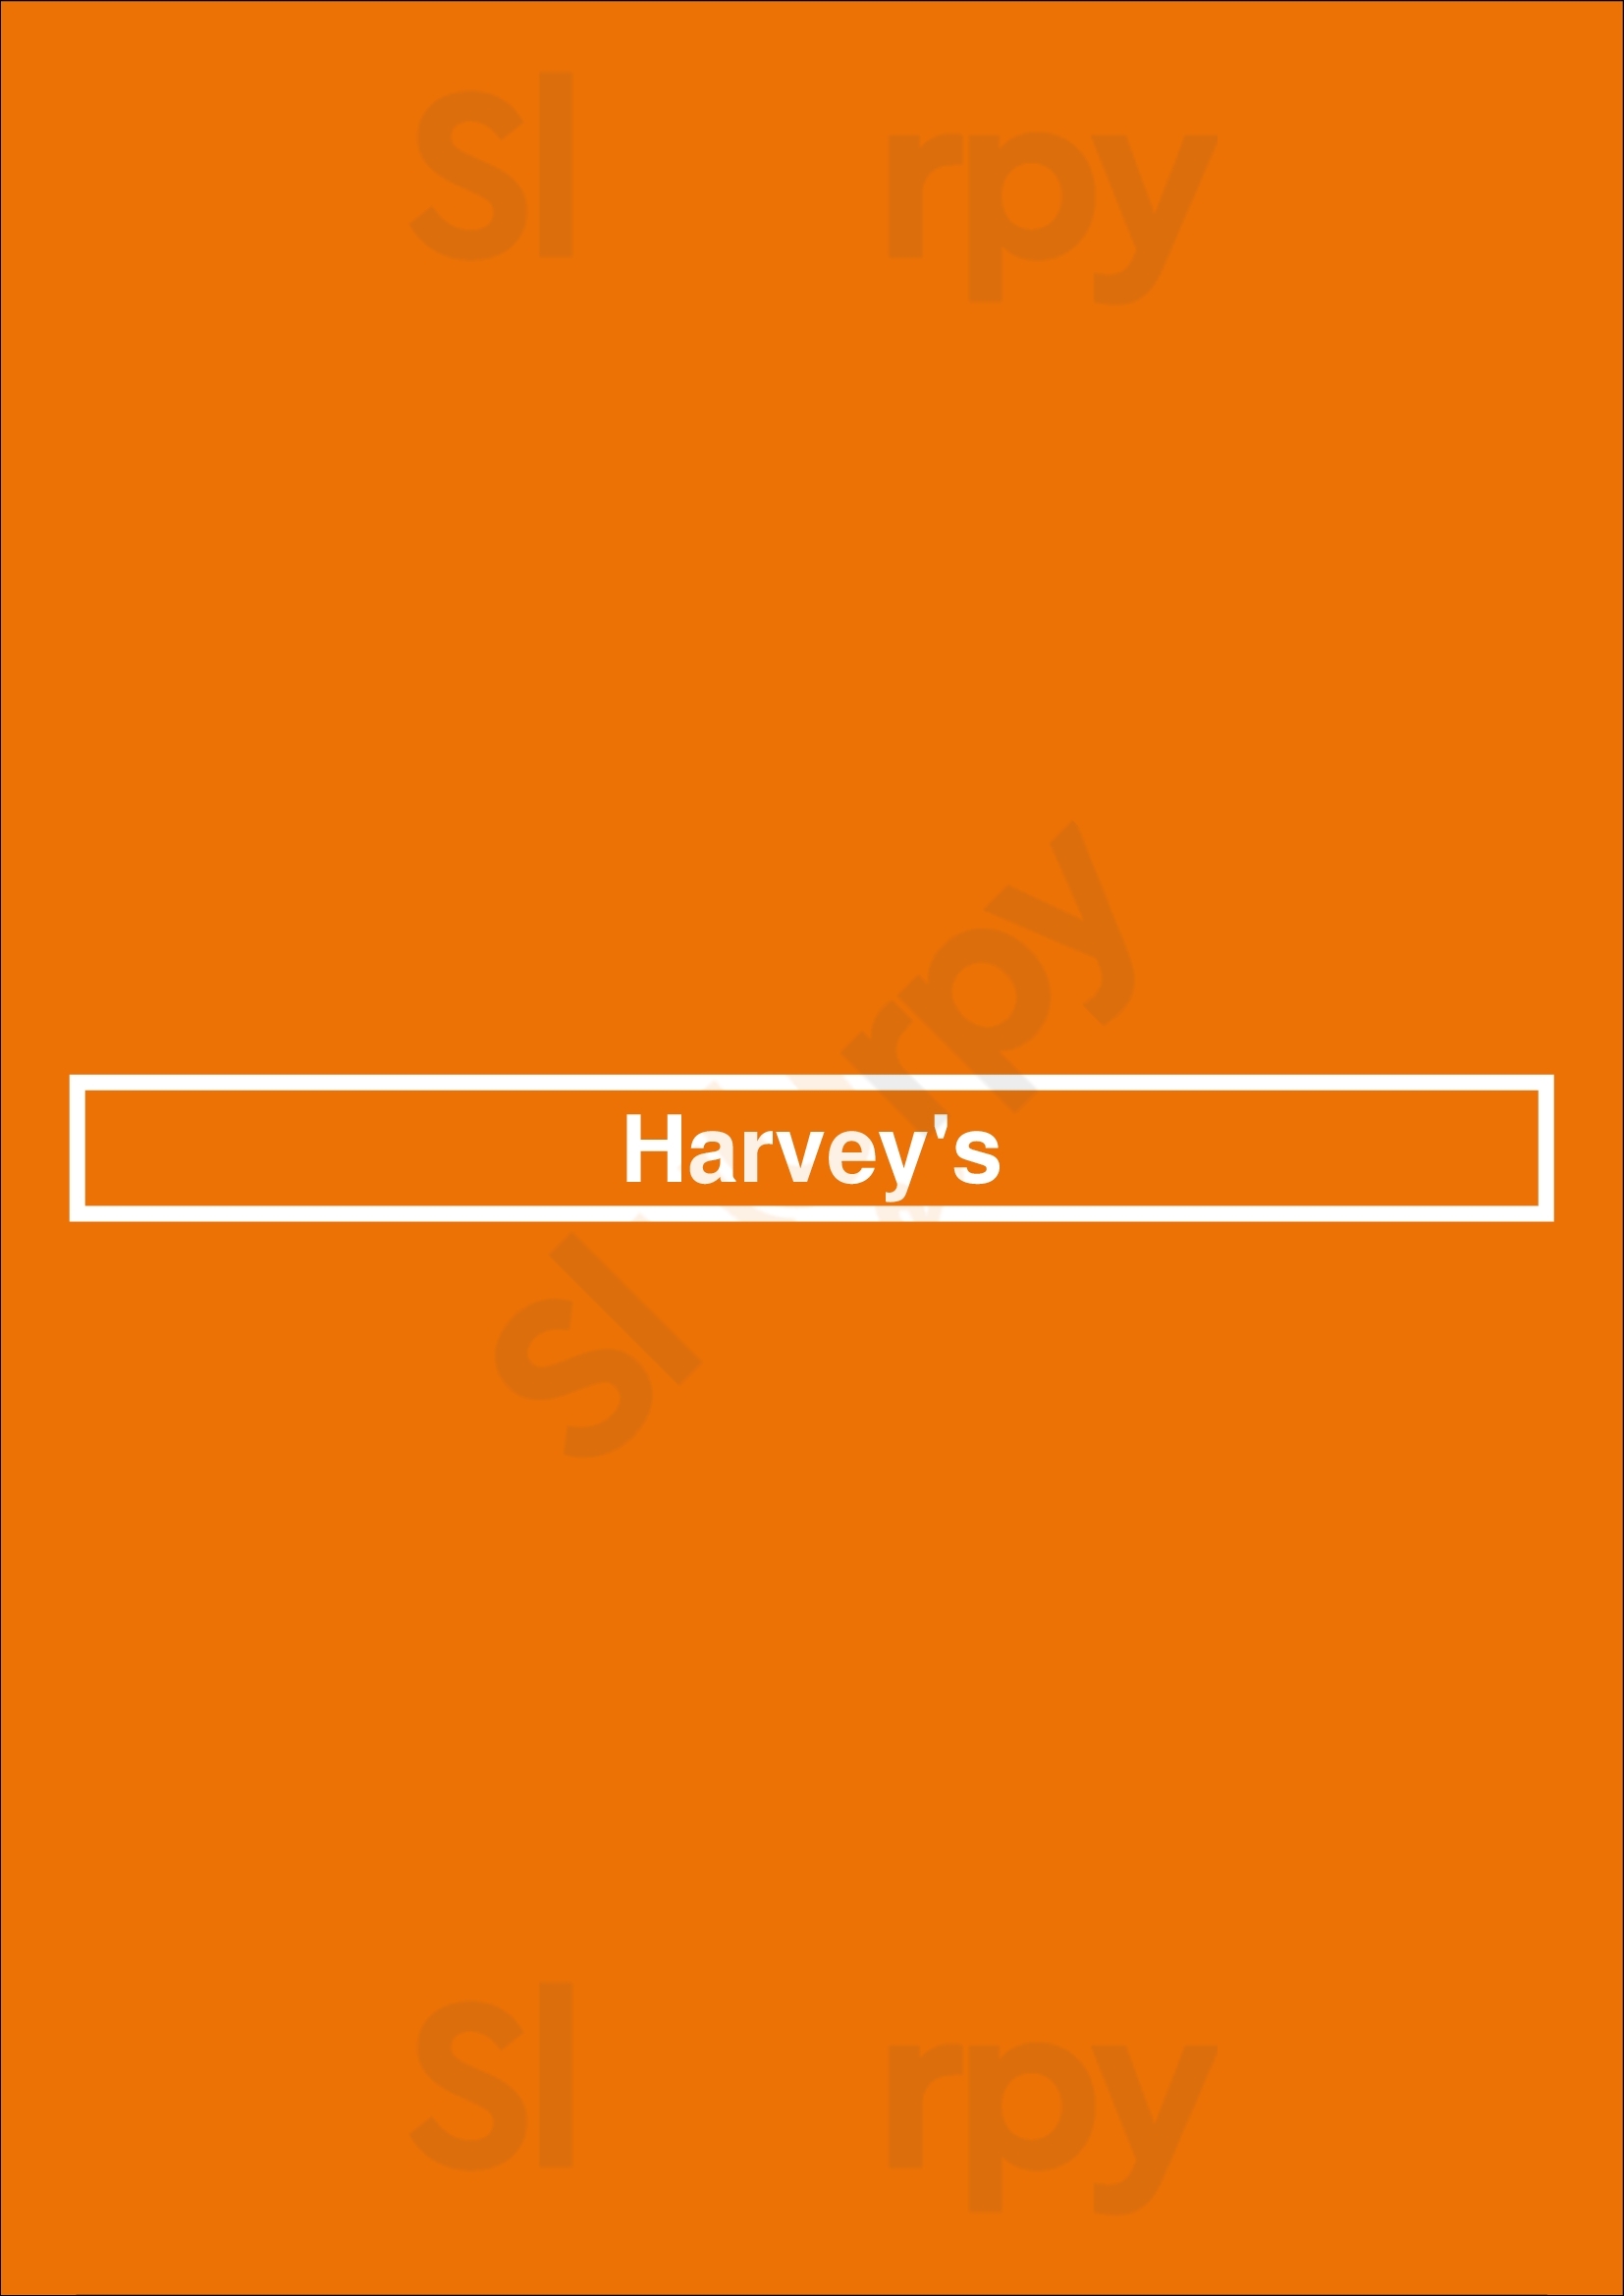 Harvey's Edmonton Menu - 1